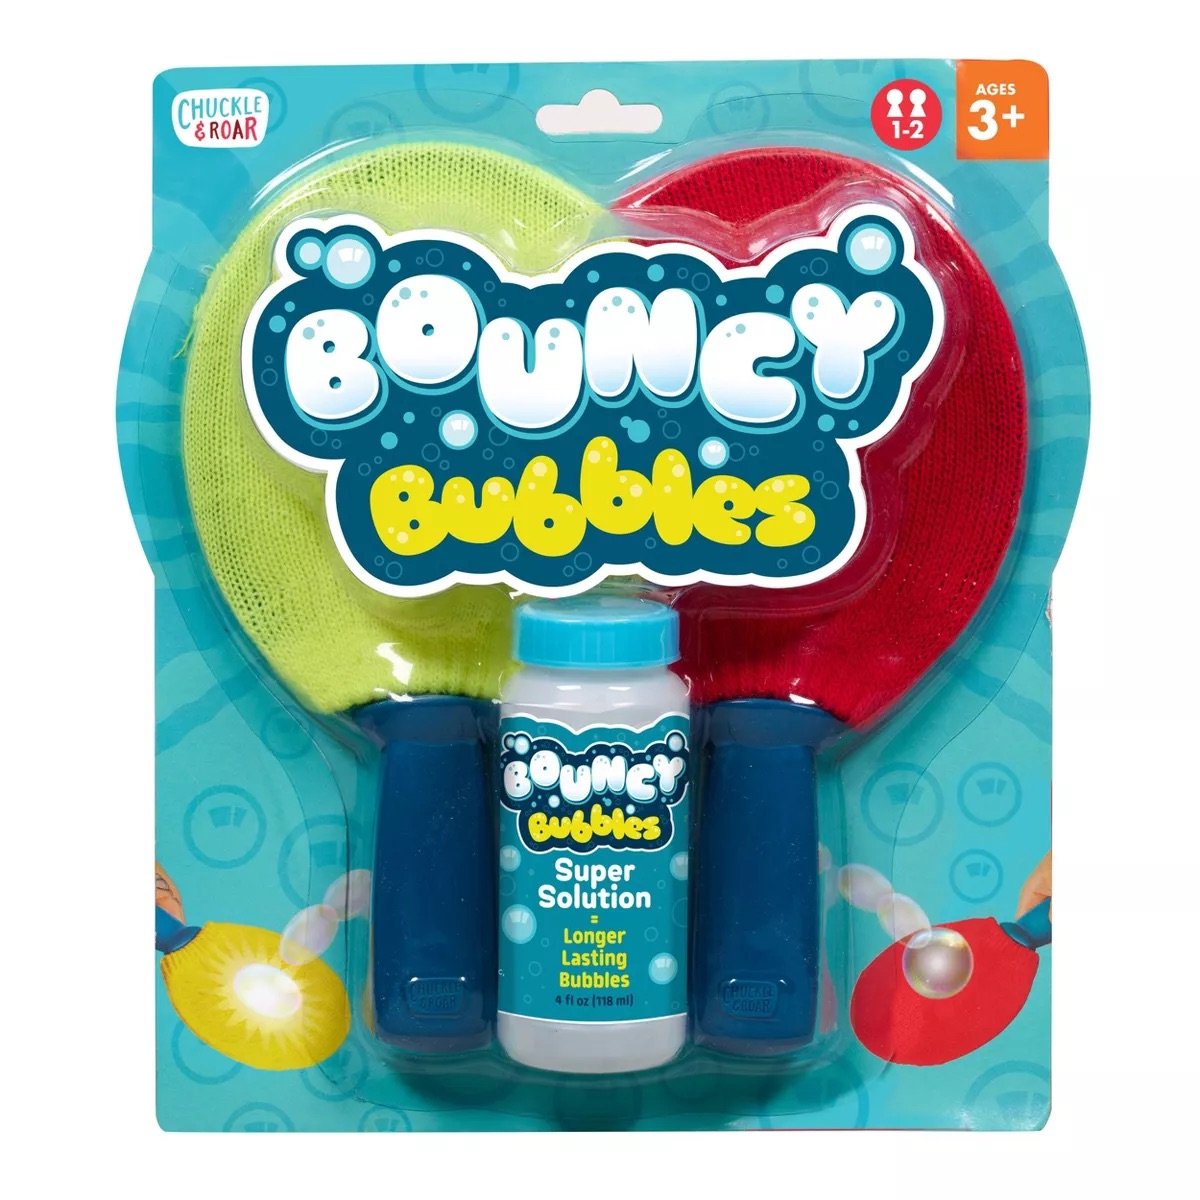 Chuckle & Roar Bouncy Bubbles.jpeg